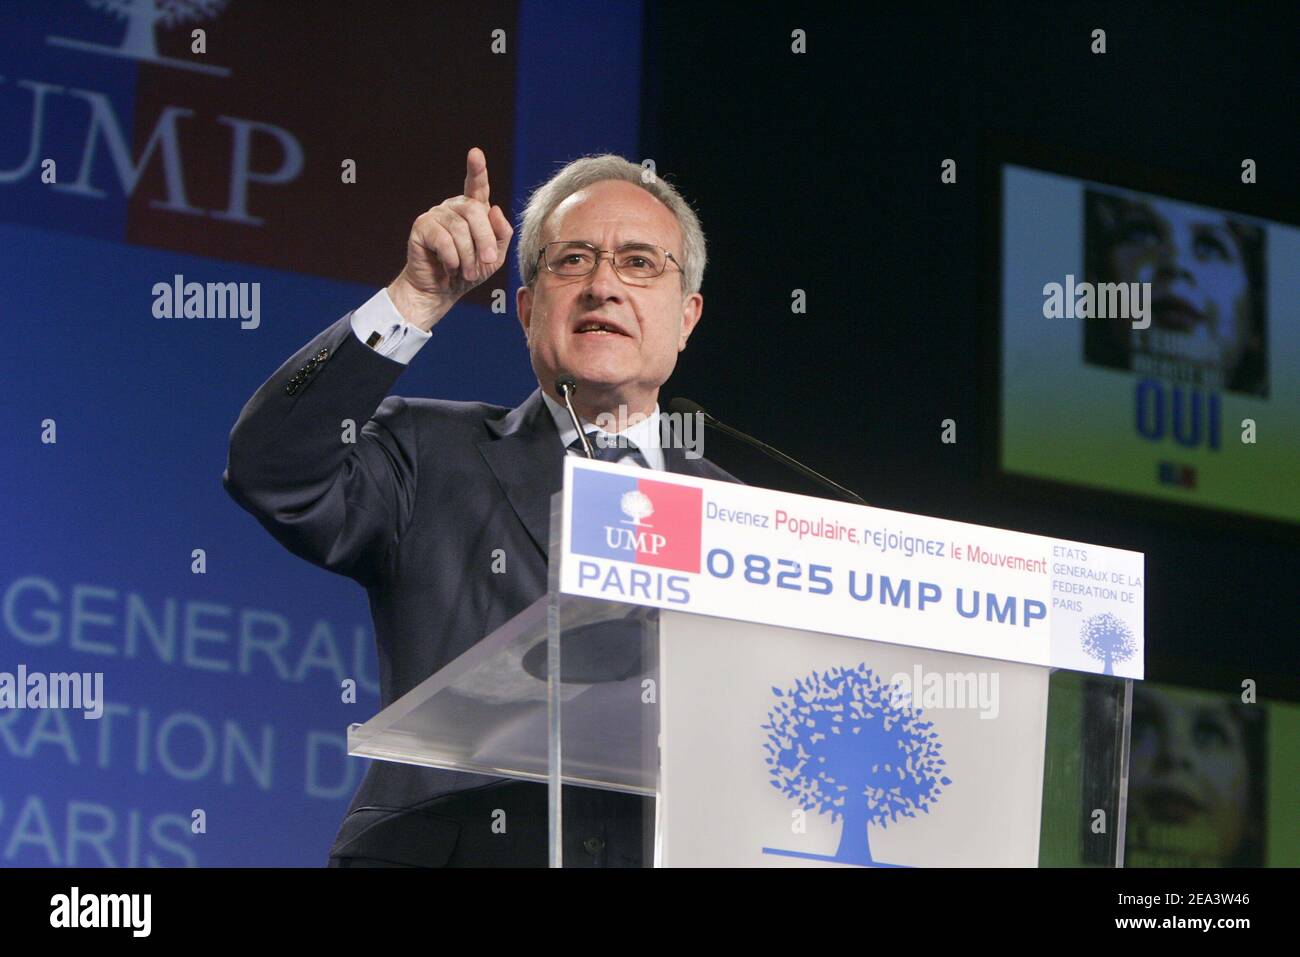 L'ex sindaco di Parigi Jean Tiberi parla ad un incontro a Parigi, in Francia, il 16 aprile 2005, riunendo i quattro candidati del partito UMP alla Mayoralty di Parigi. Foto di Mousse/ABACA Foto Stock